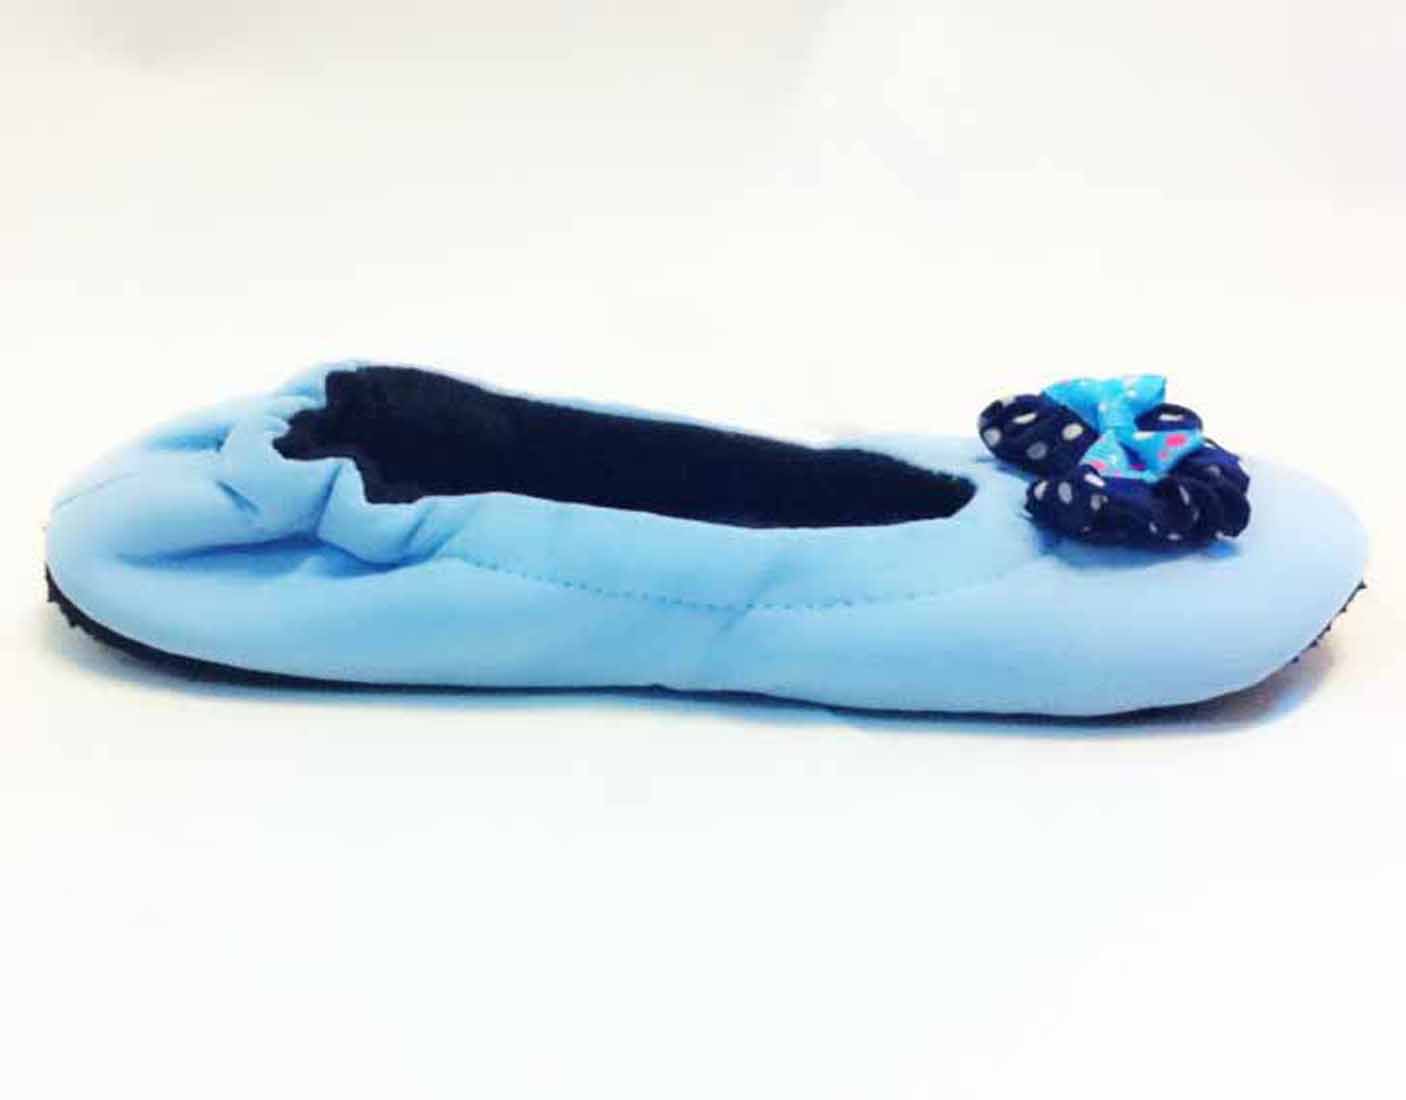 รองเท้าใส่ในบ้าน หุ้มส้นสวมใส่ทำงานและเล่นโยคะเพื่อสุขภาพเท้า นำเข้า ฟรีไซส์ สีฟ้า - พร้อมส่งRB2230 ราคา359บาท